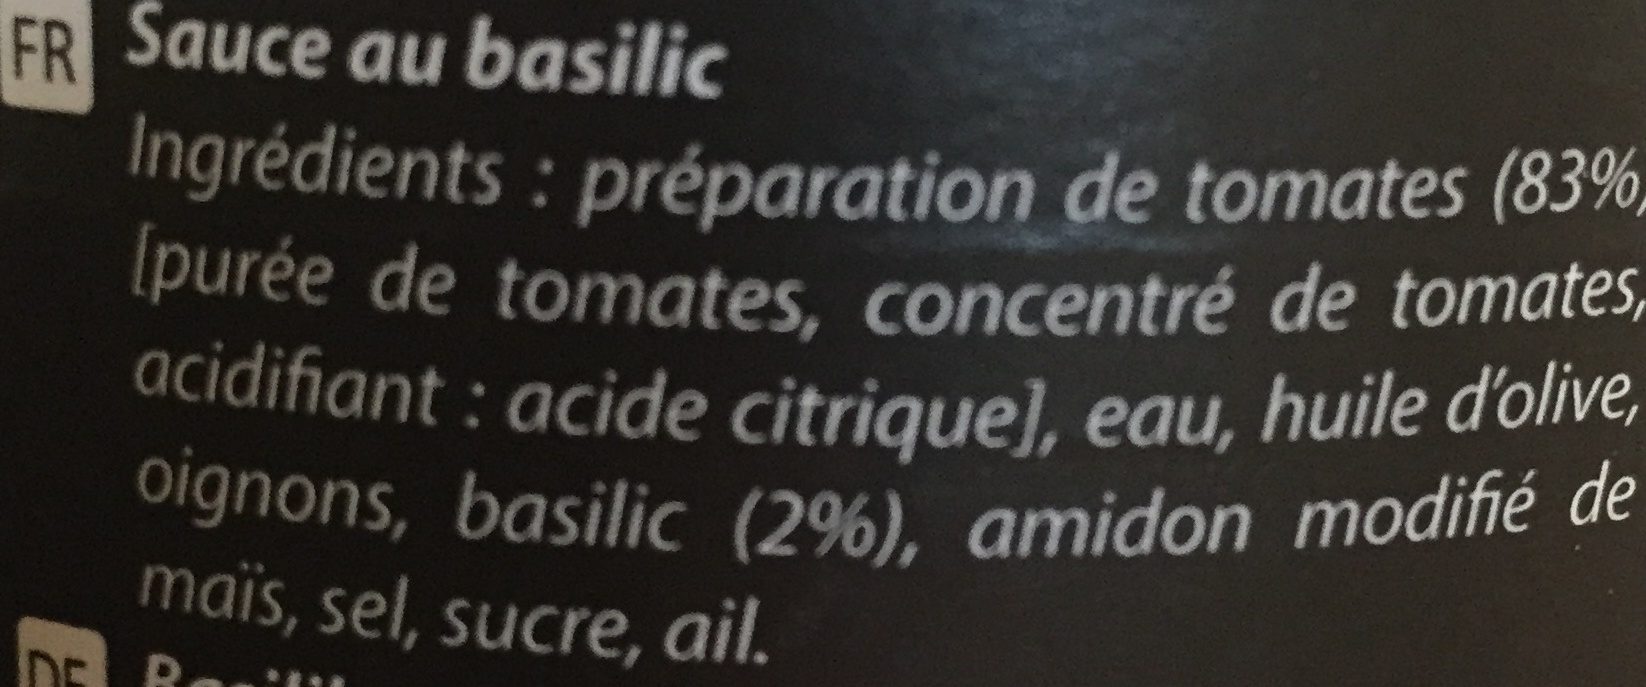 Sauce au basilic - Ingredients - fr